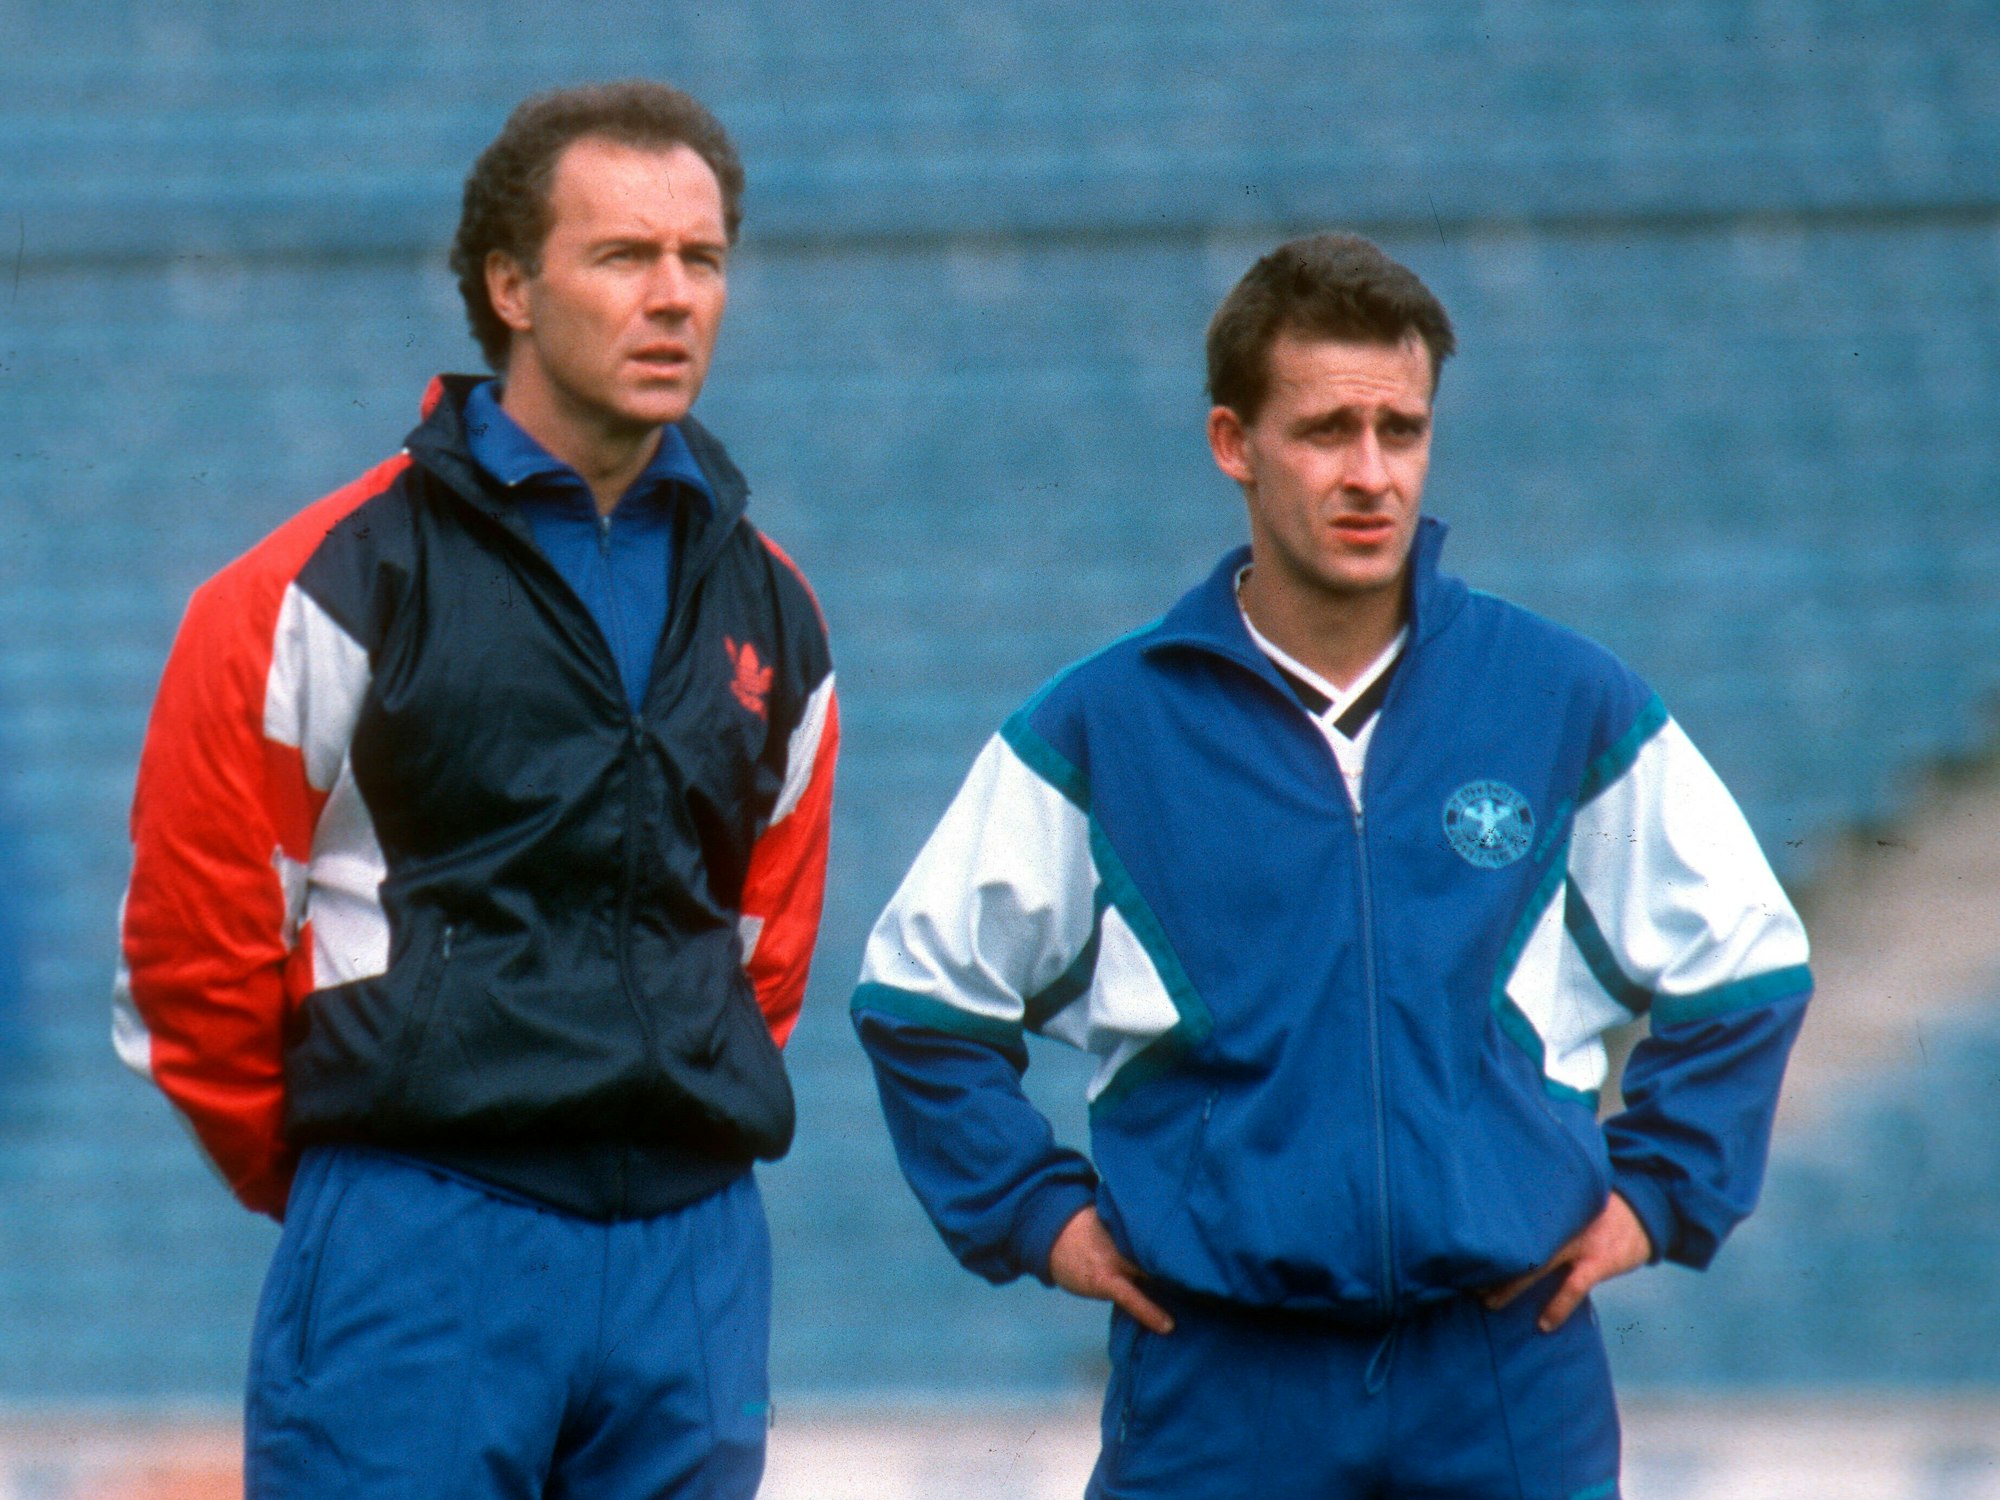 Bundestrainer Franz Beckenbauer steht neben Pierre Littbarski, der die Hände in den Hüften hat.